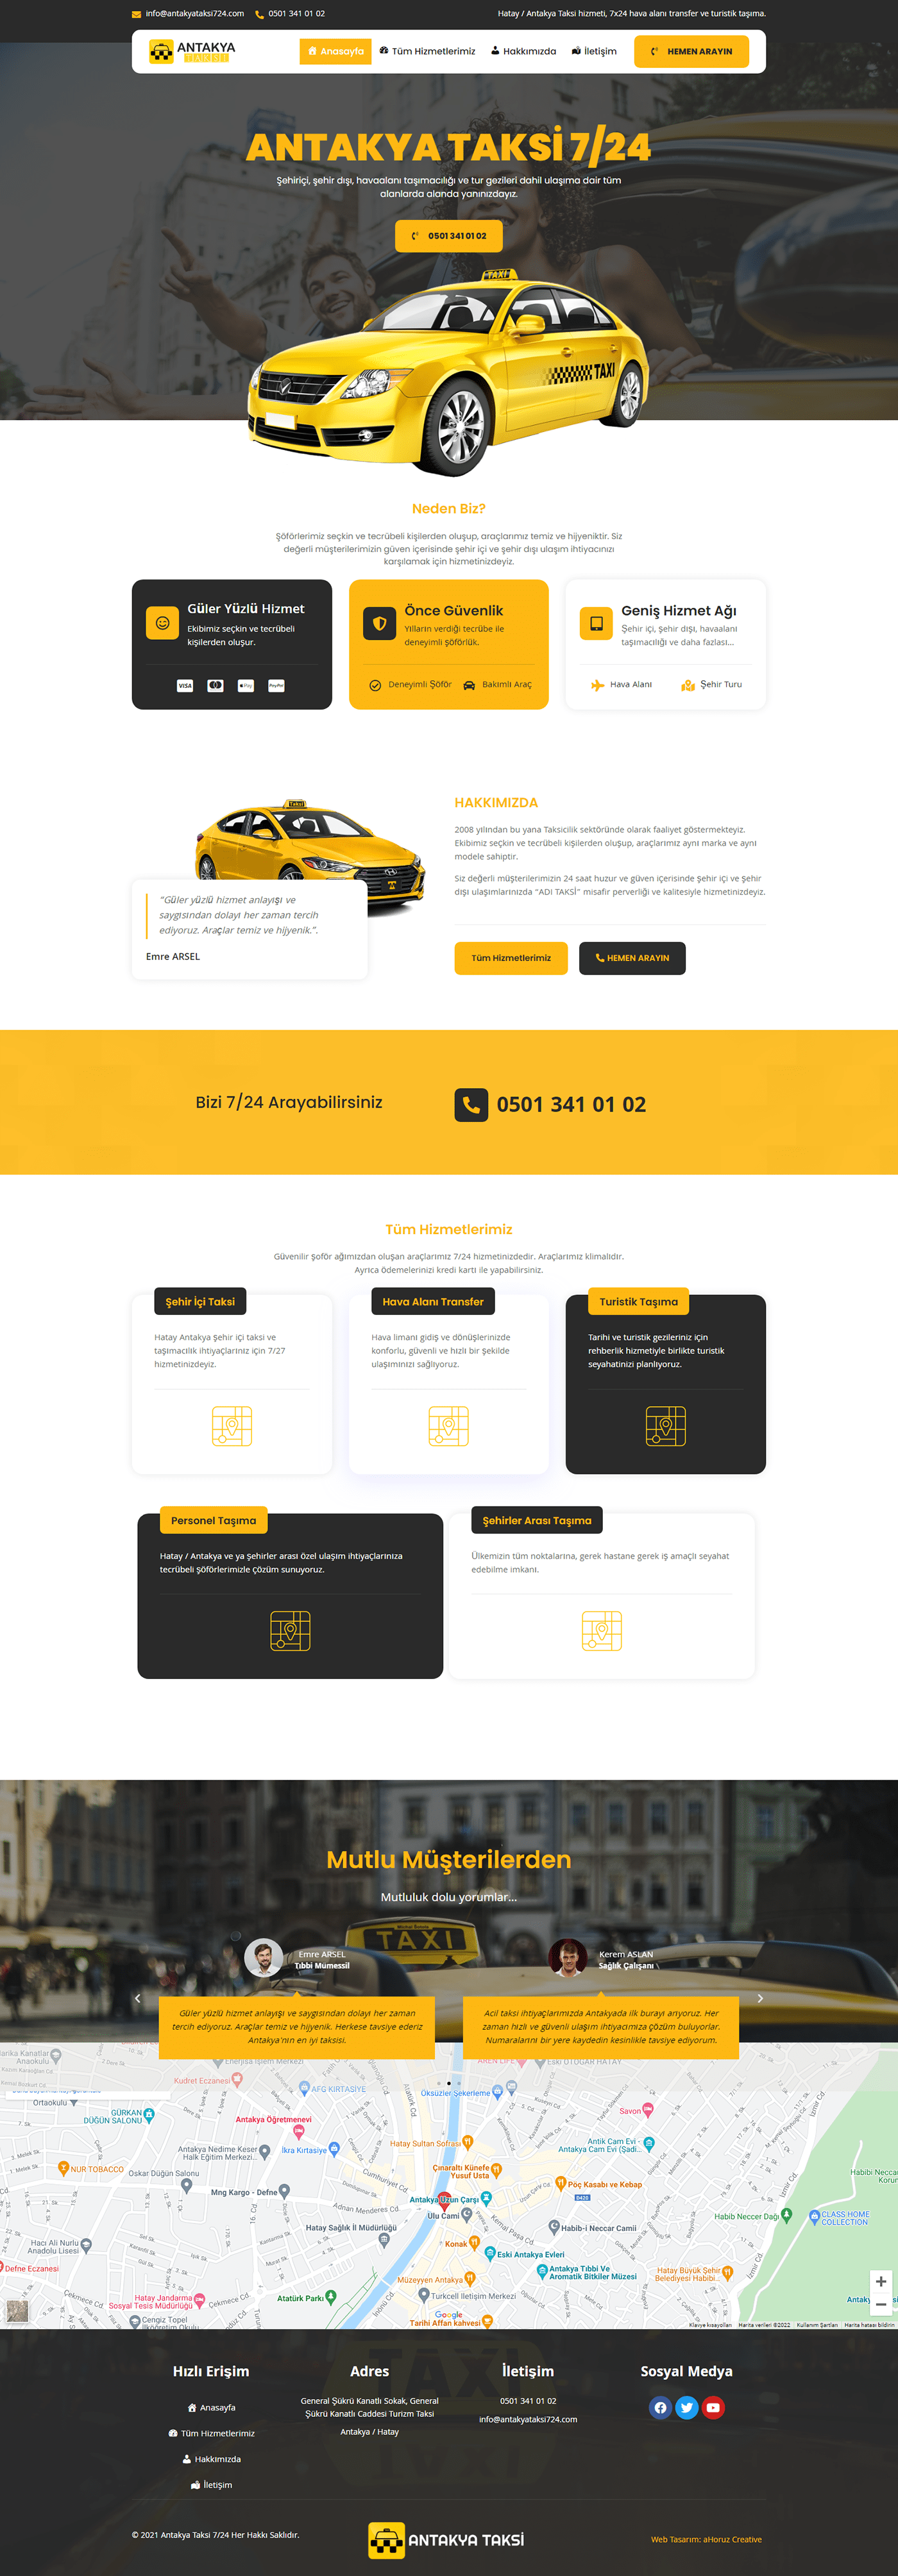 taksi web sitesi taxi cab website taXi web design taxi website